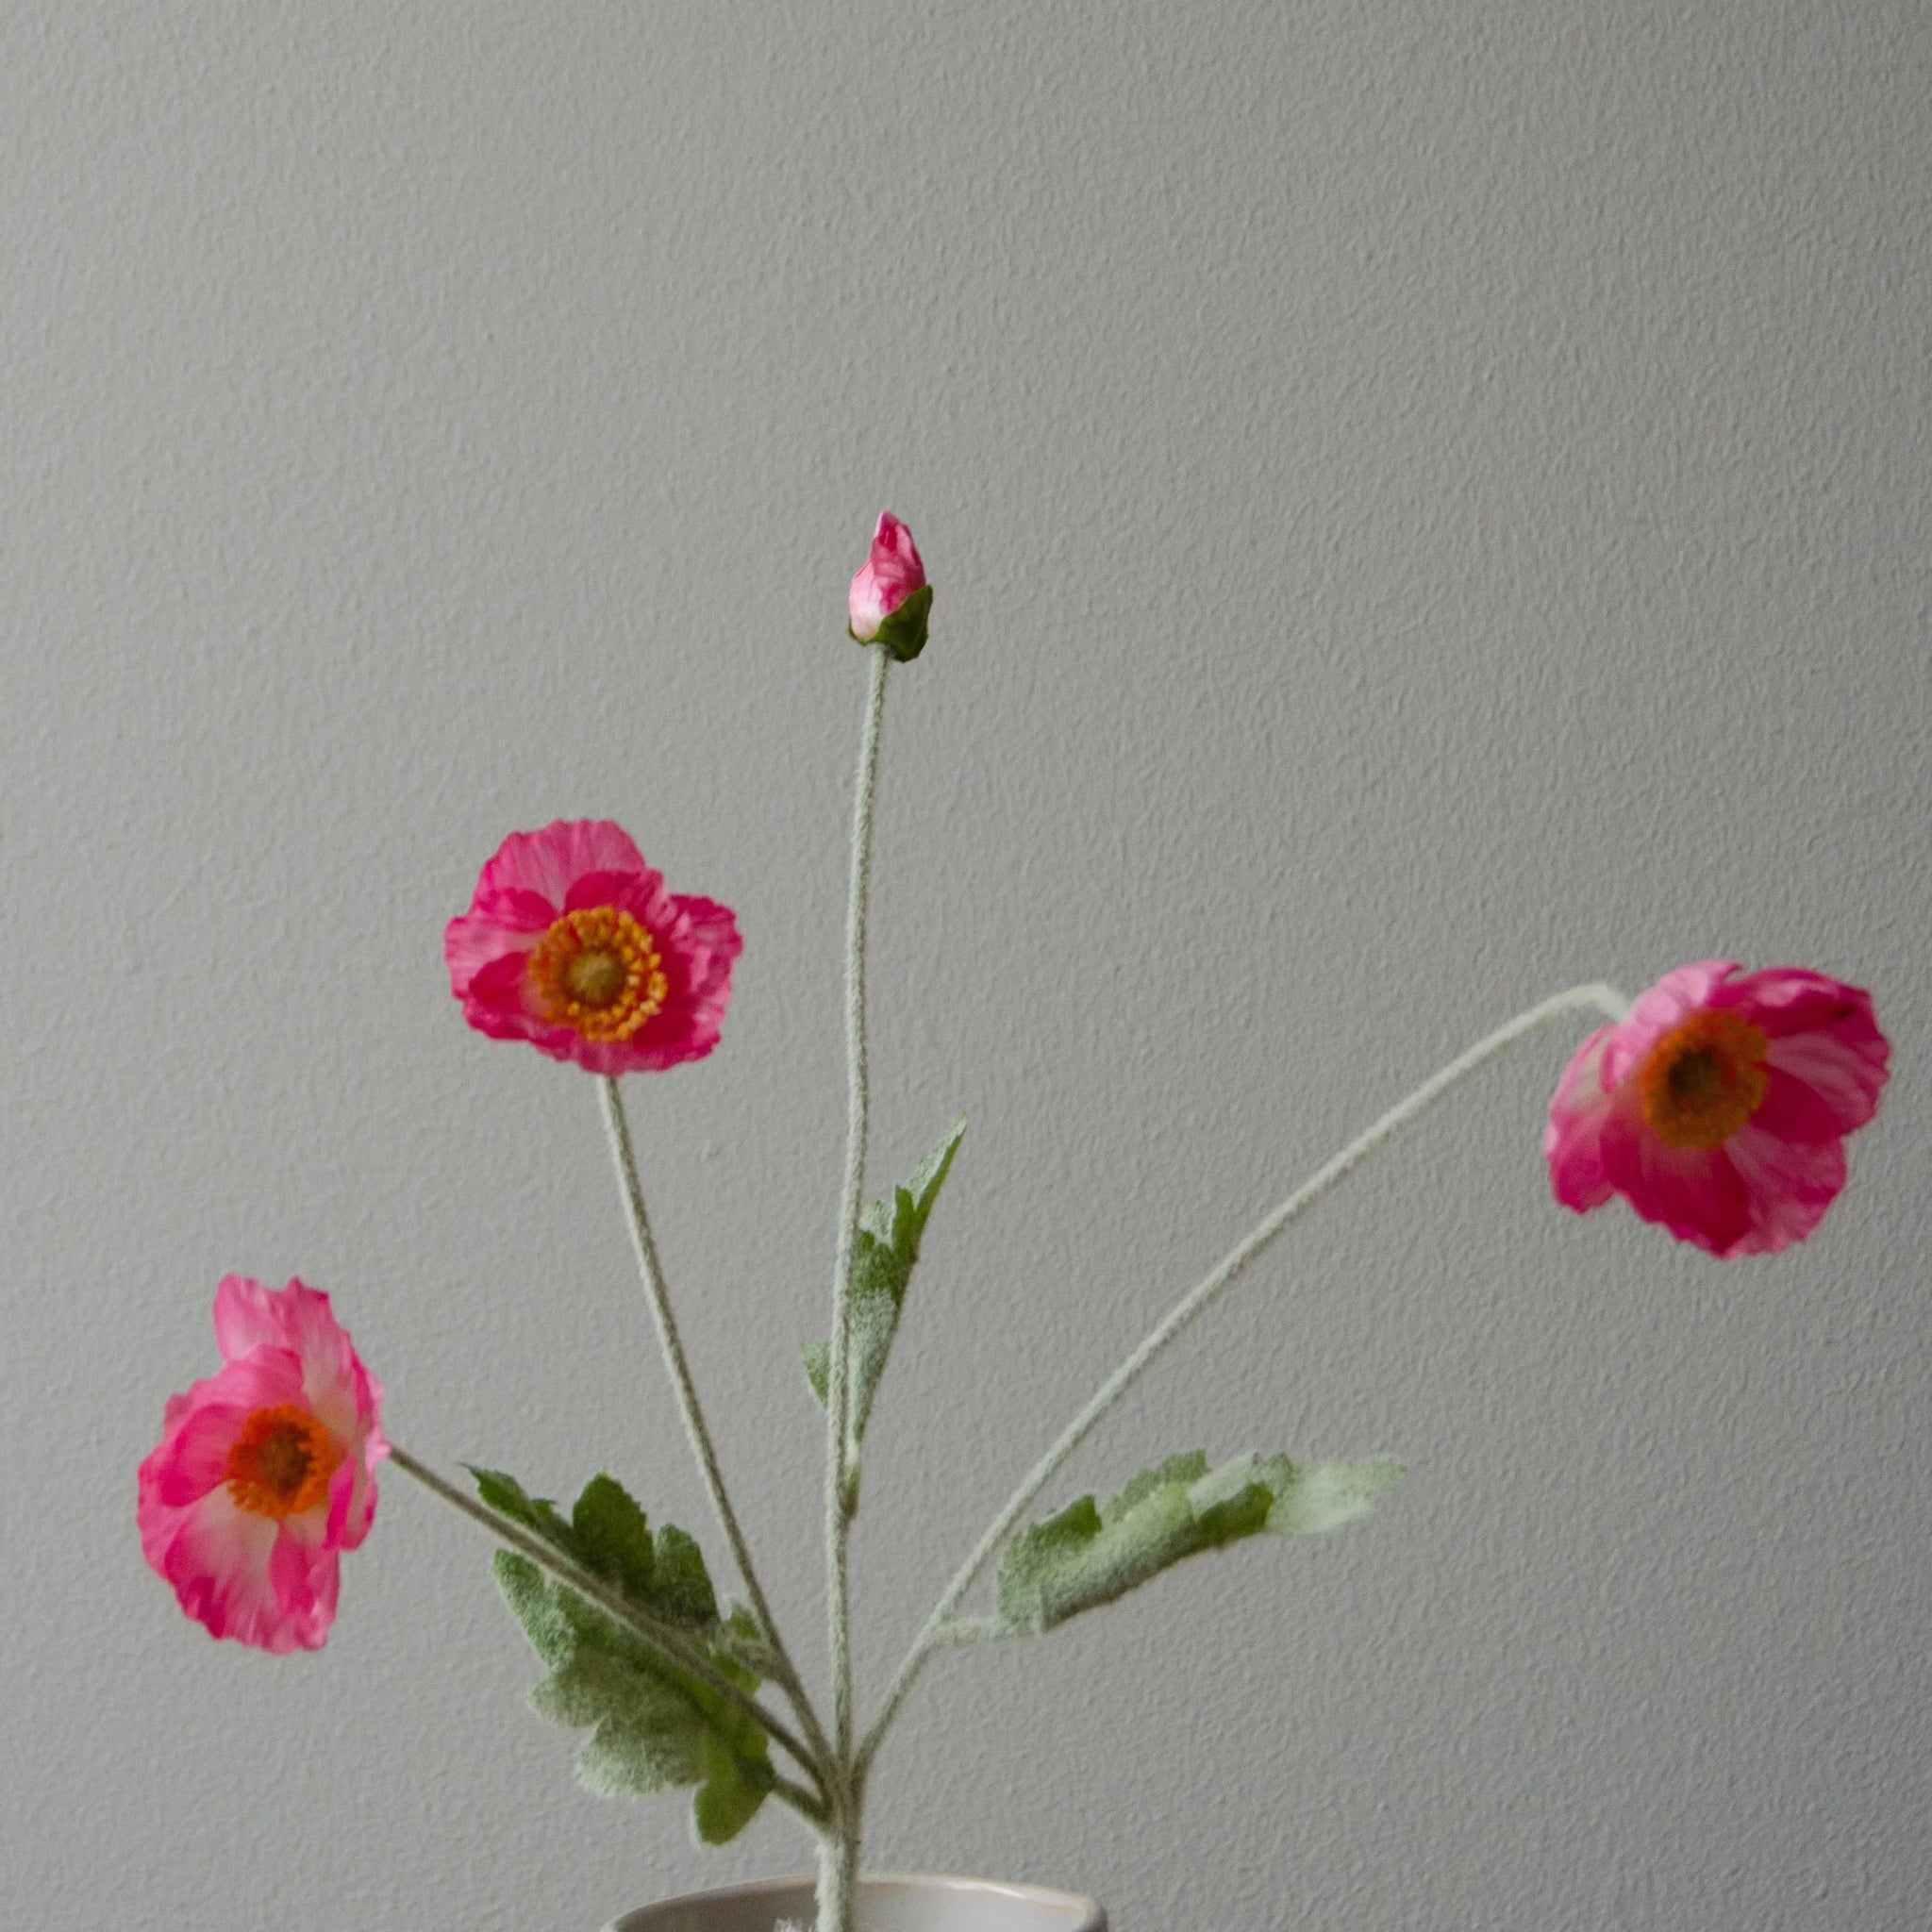 Poppy Flower in Pink from Botané